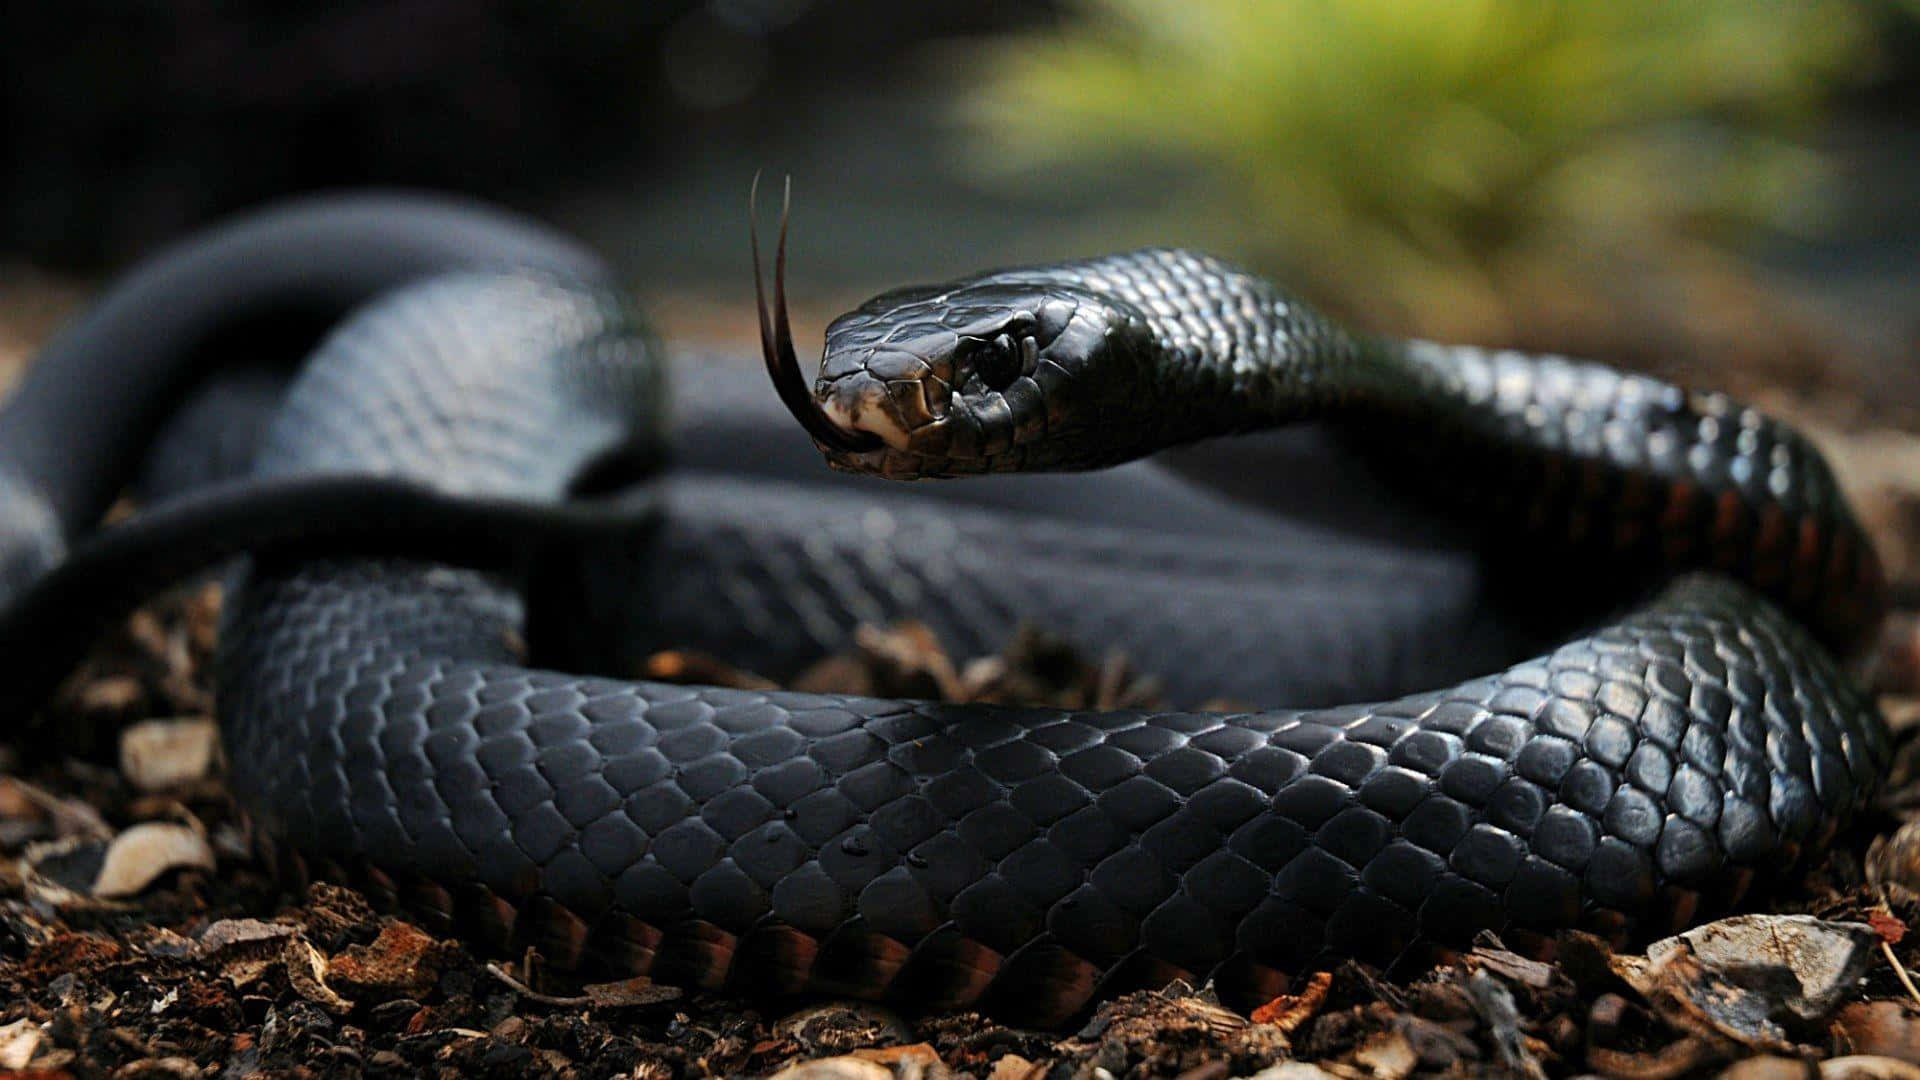 An Intimidating Closeup of a Cobra Snake